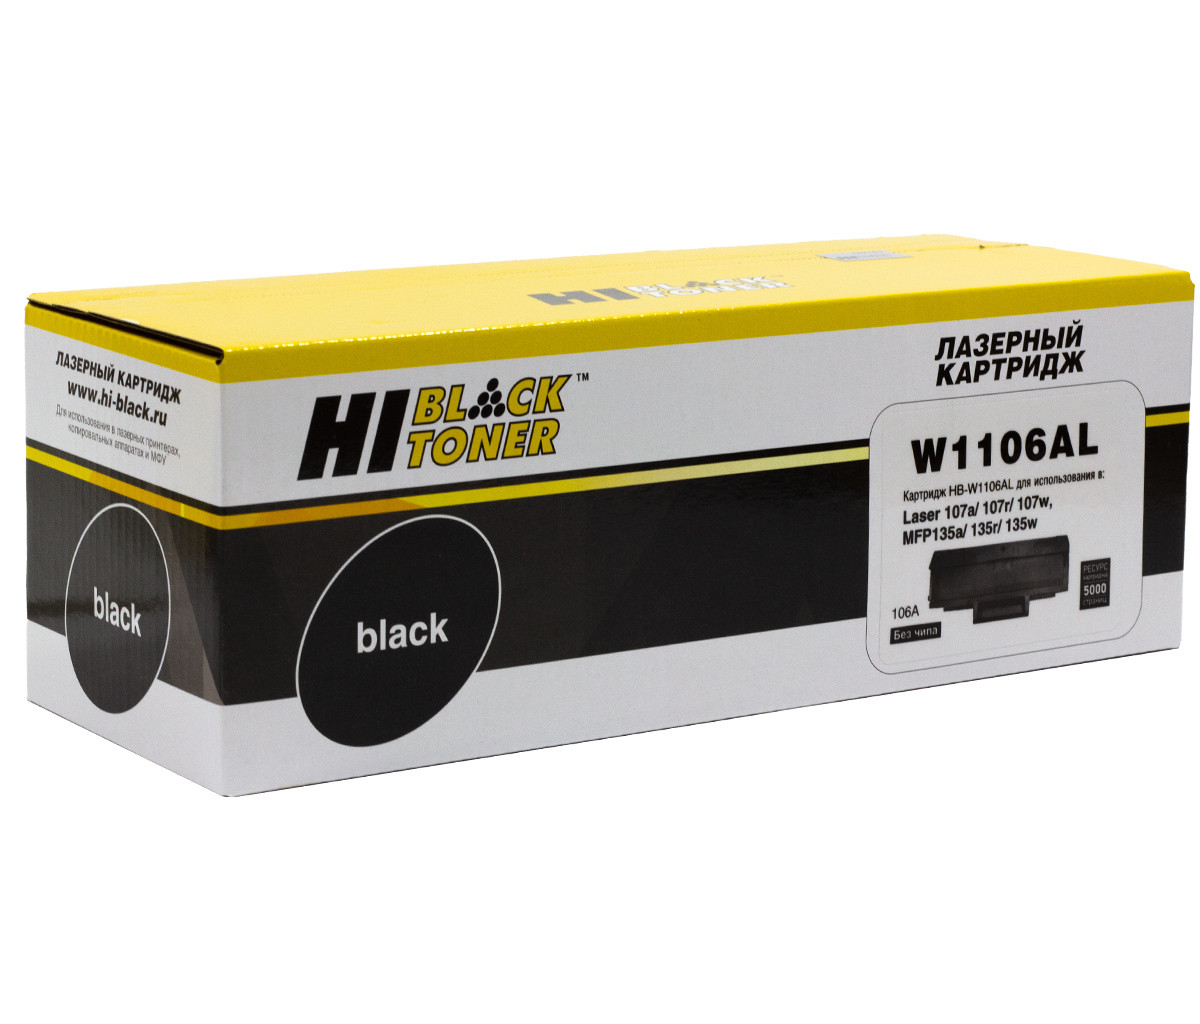 Картридж 106A/ W1106AL (для HP Laser 107/ 135/ 137) Hi-Black, повышенная ёмкость, без чипа